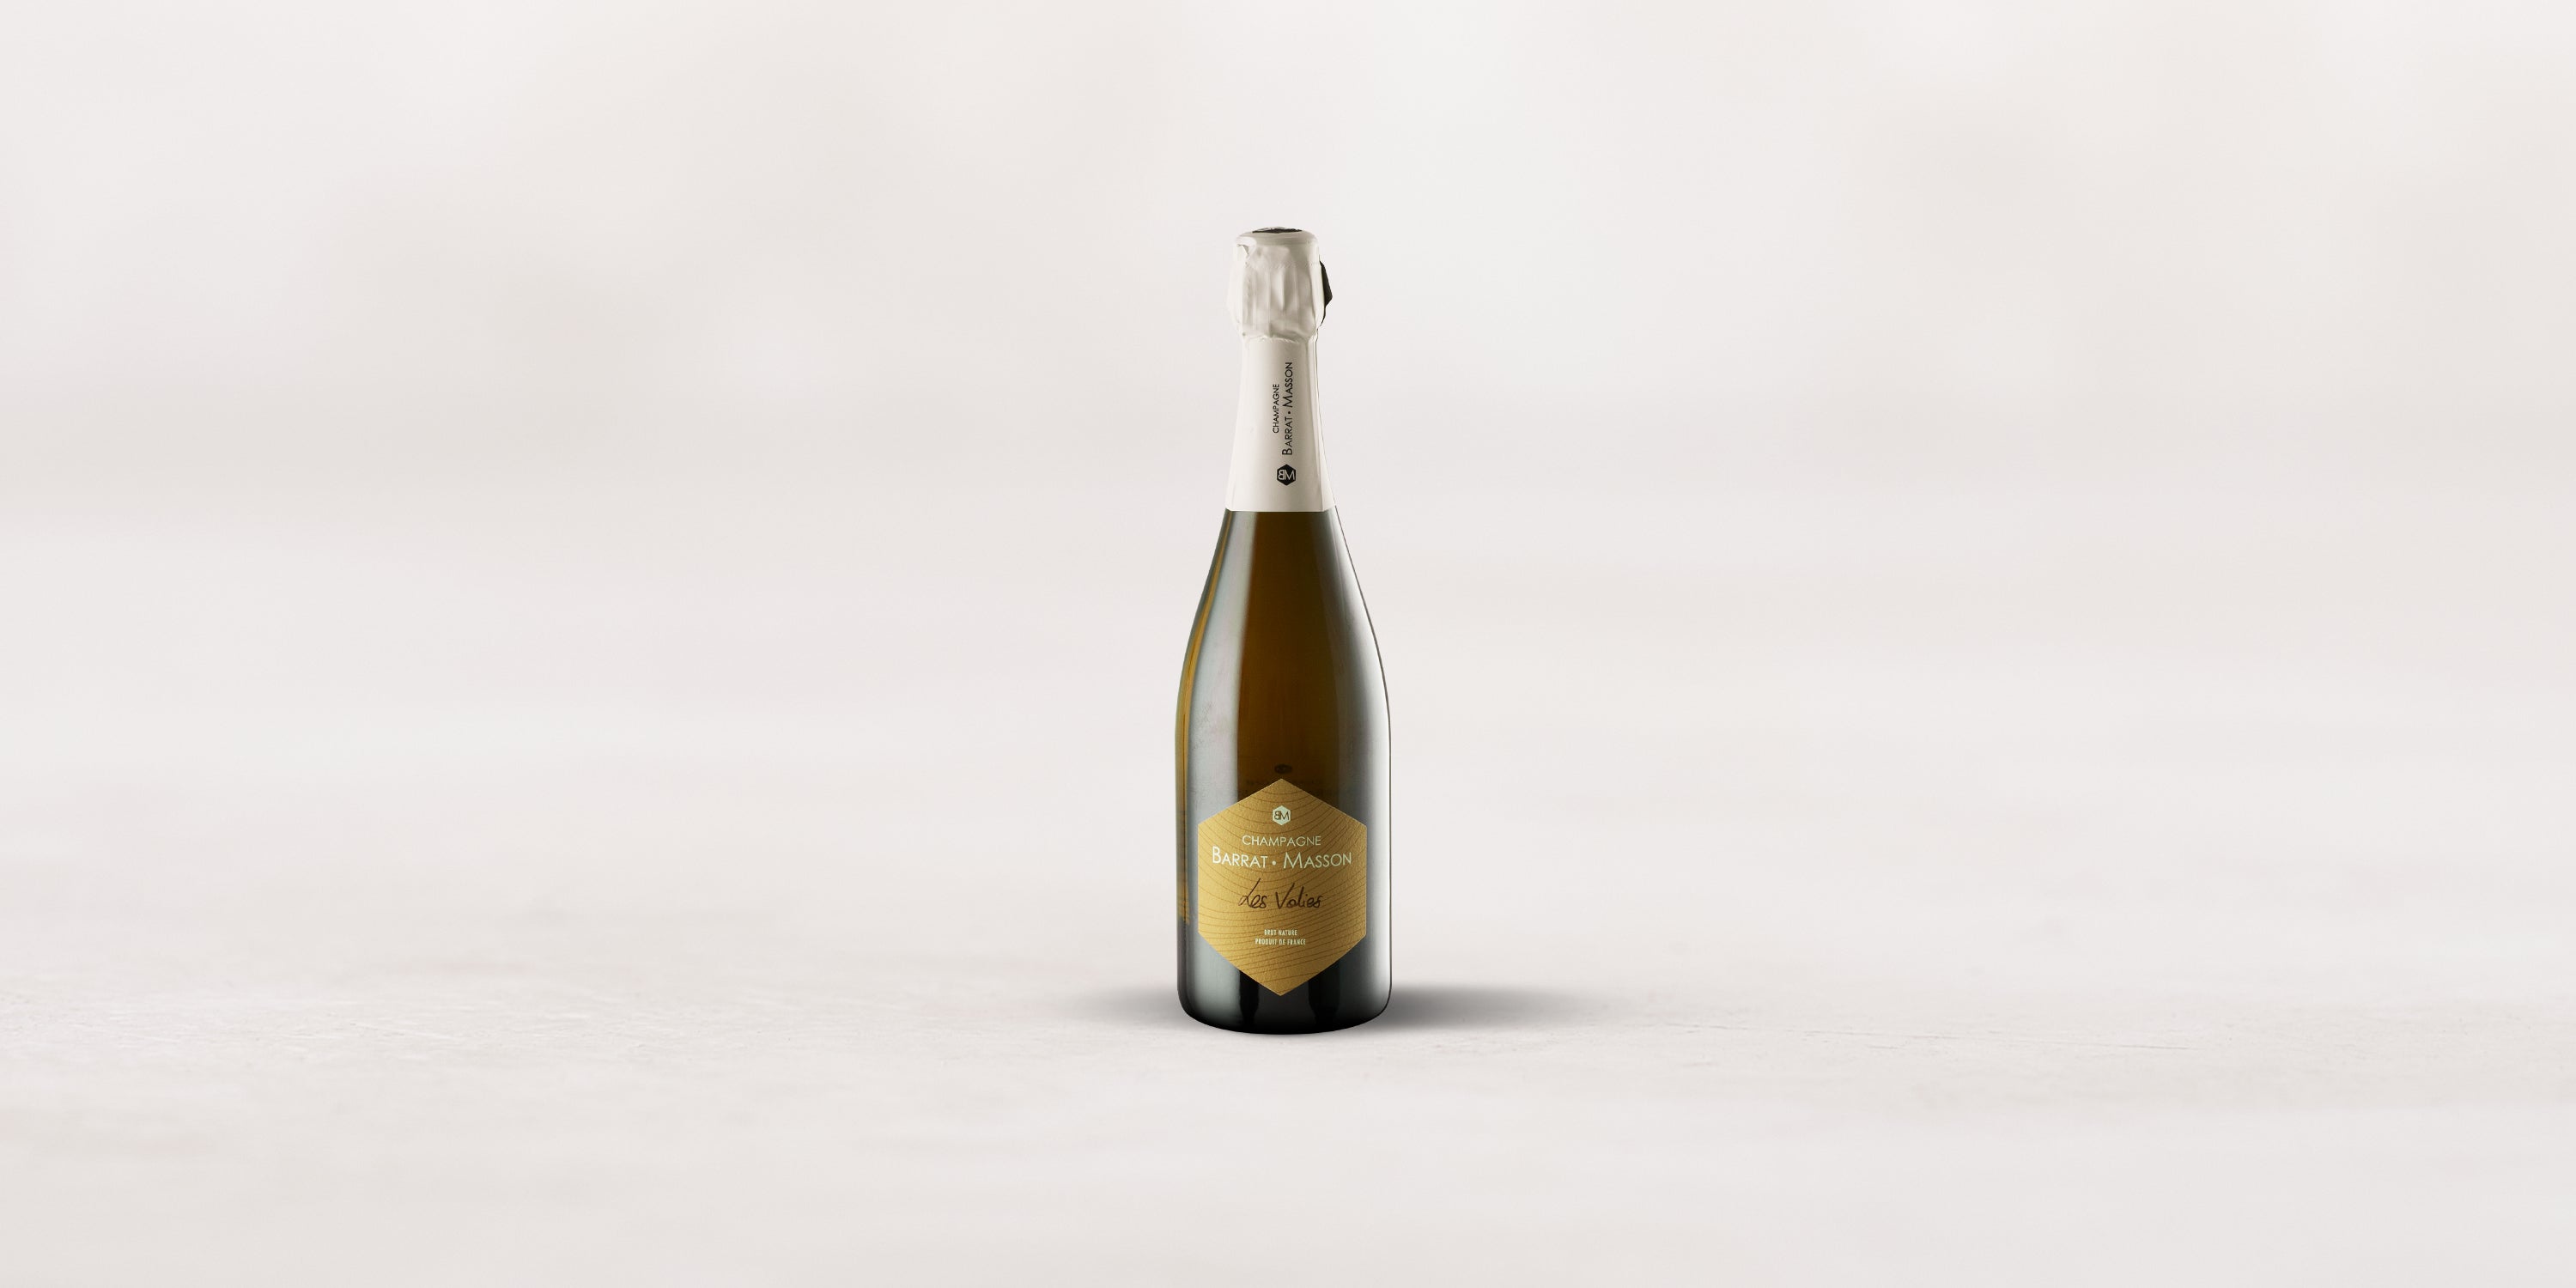 Barrat-Masson, Champagne Brut Nature “Les Voilées”